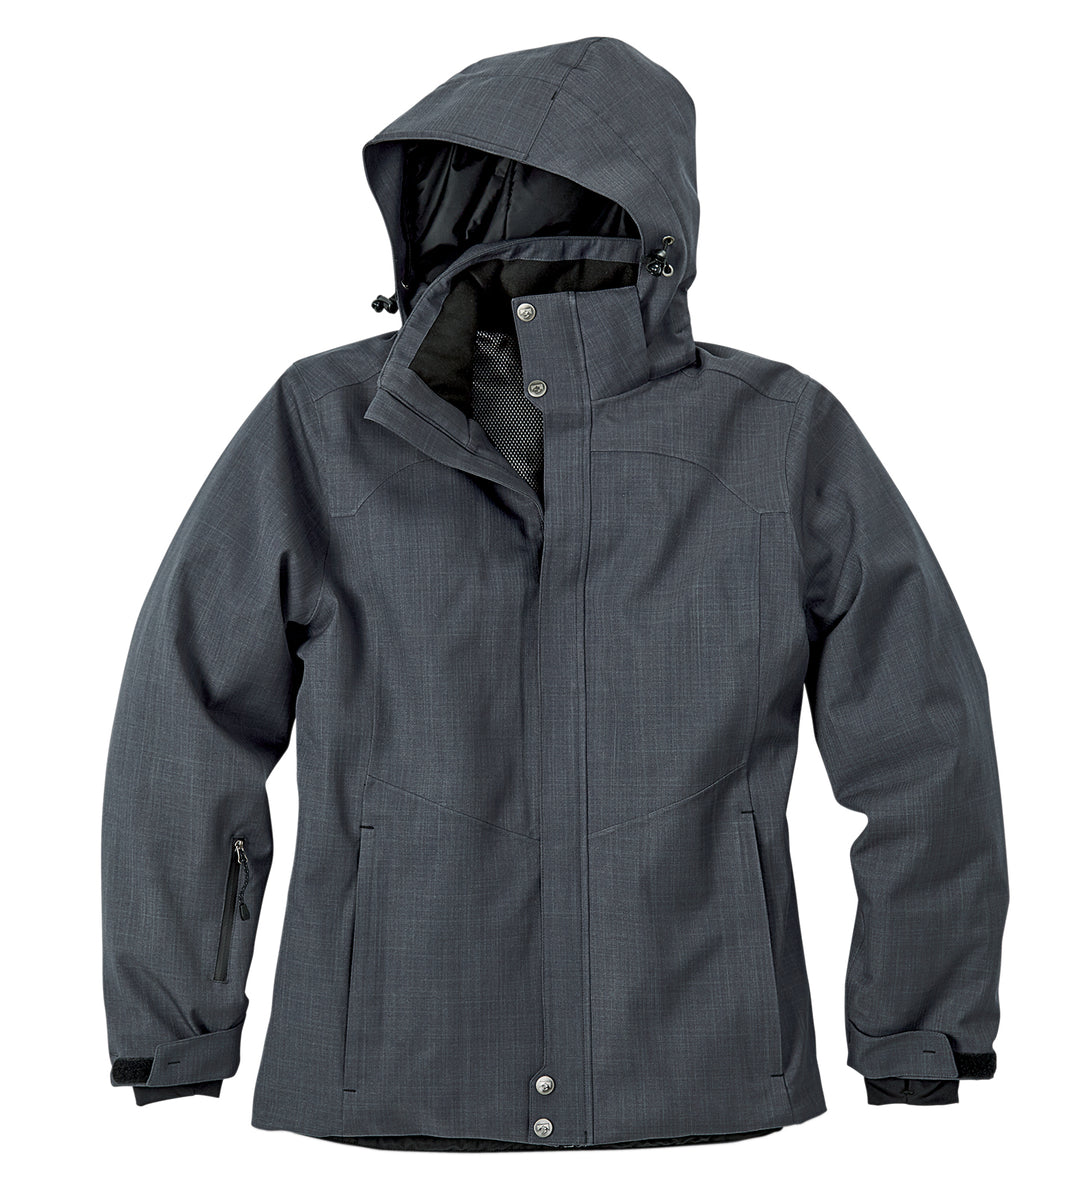 Women's Defender Winter Jacket | Storm Creek Distributor Site